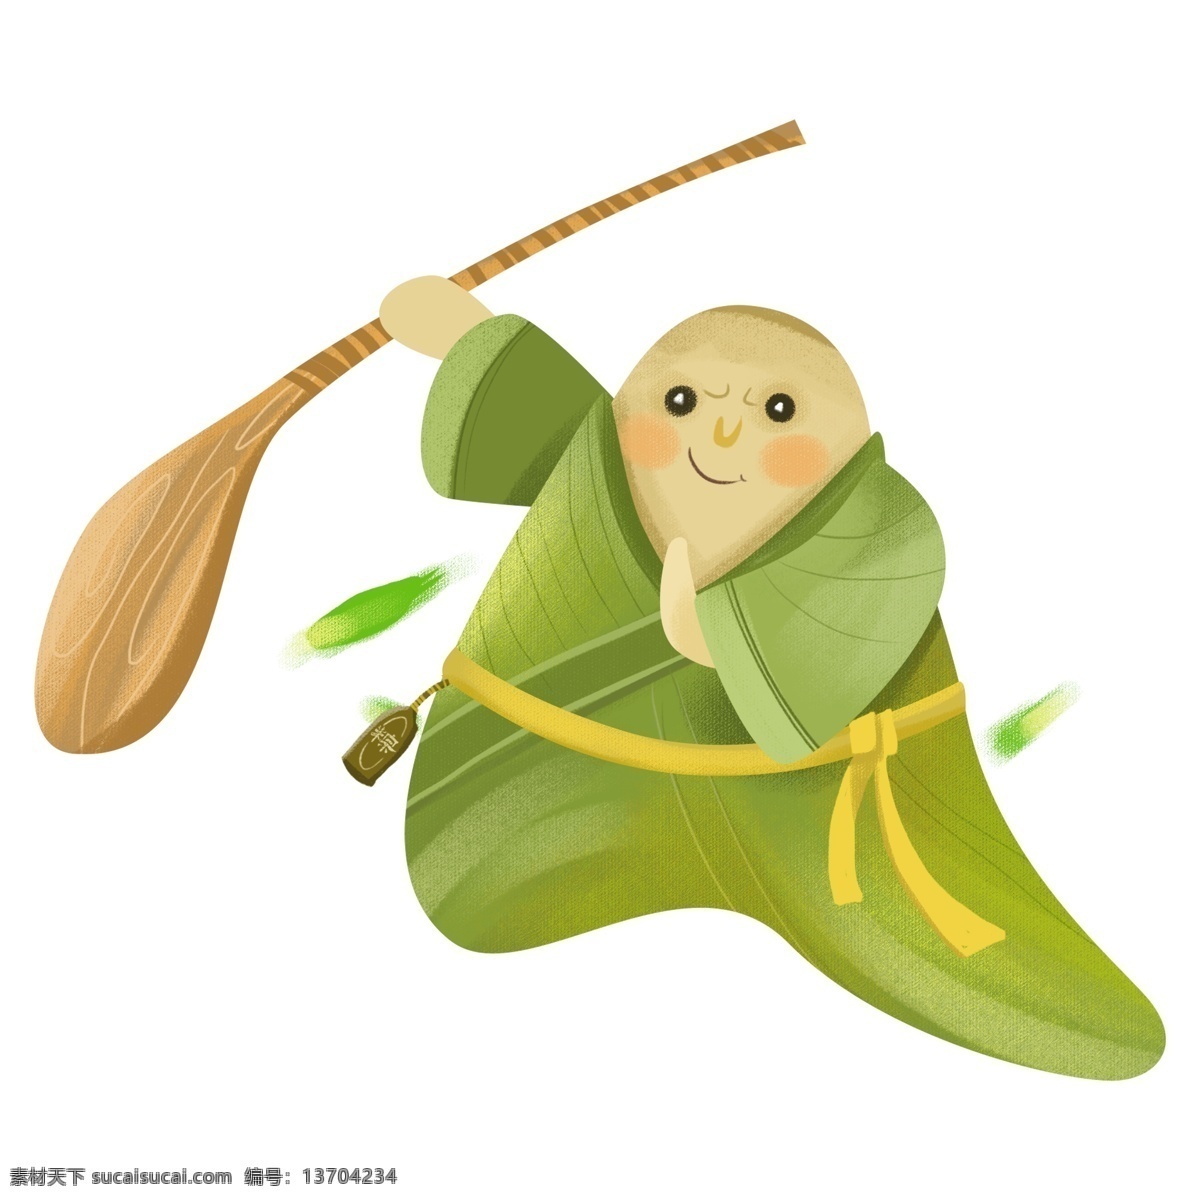 端午节 卡通 创意 粽子 创意粽子 绿色 端午 2019 可爱的粽子 传统节日 传统文化